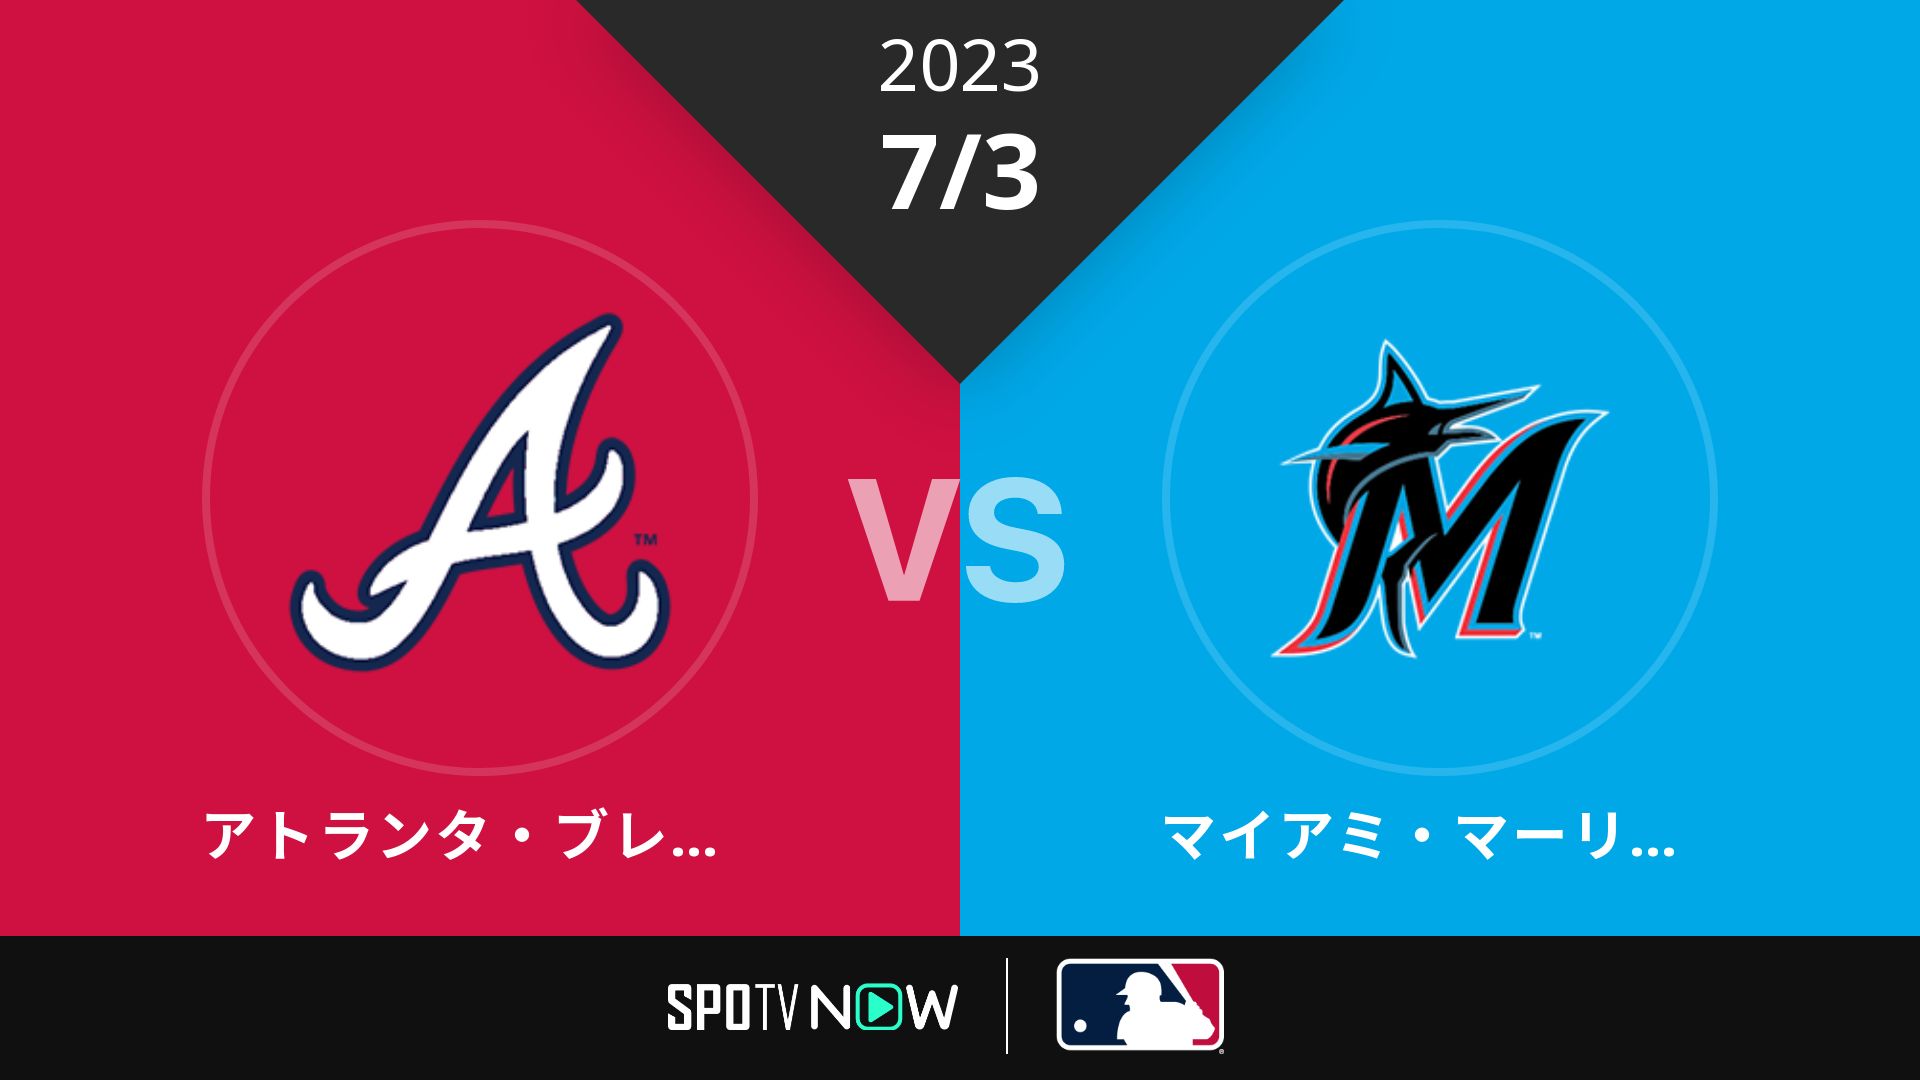 2023/7/3 ブレーブス vs マーリンズ [MLB]